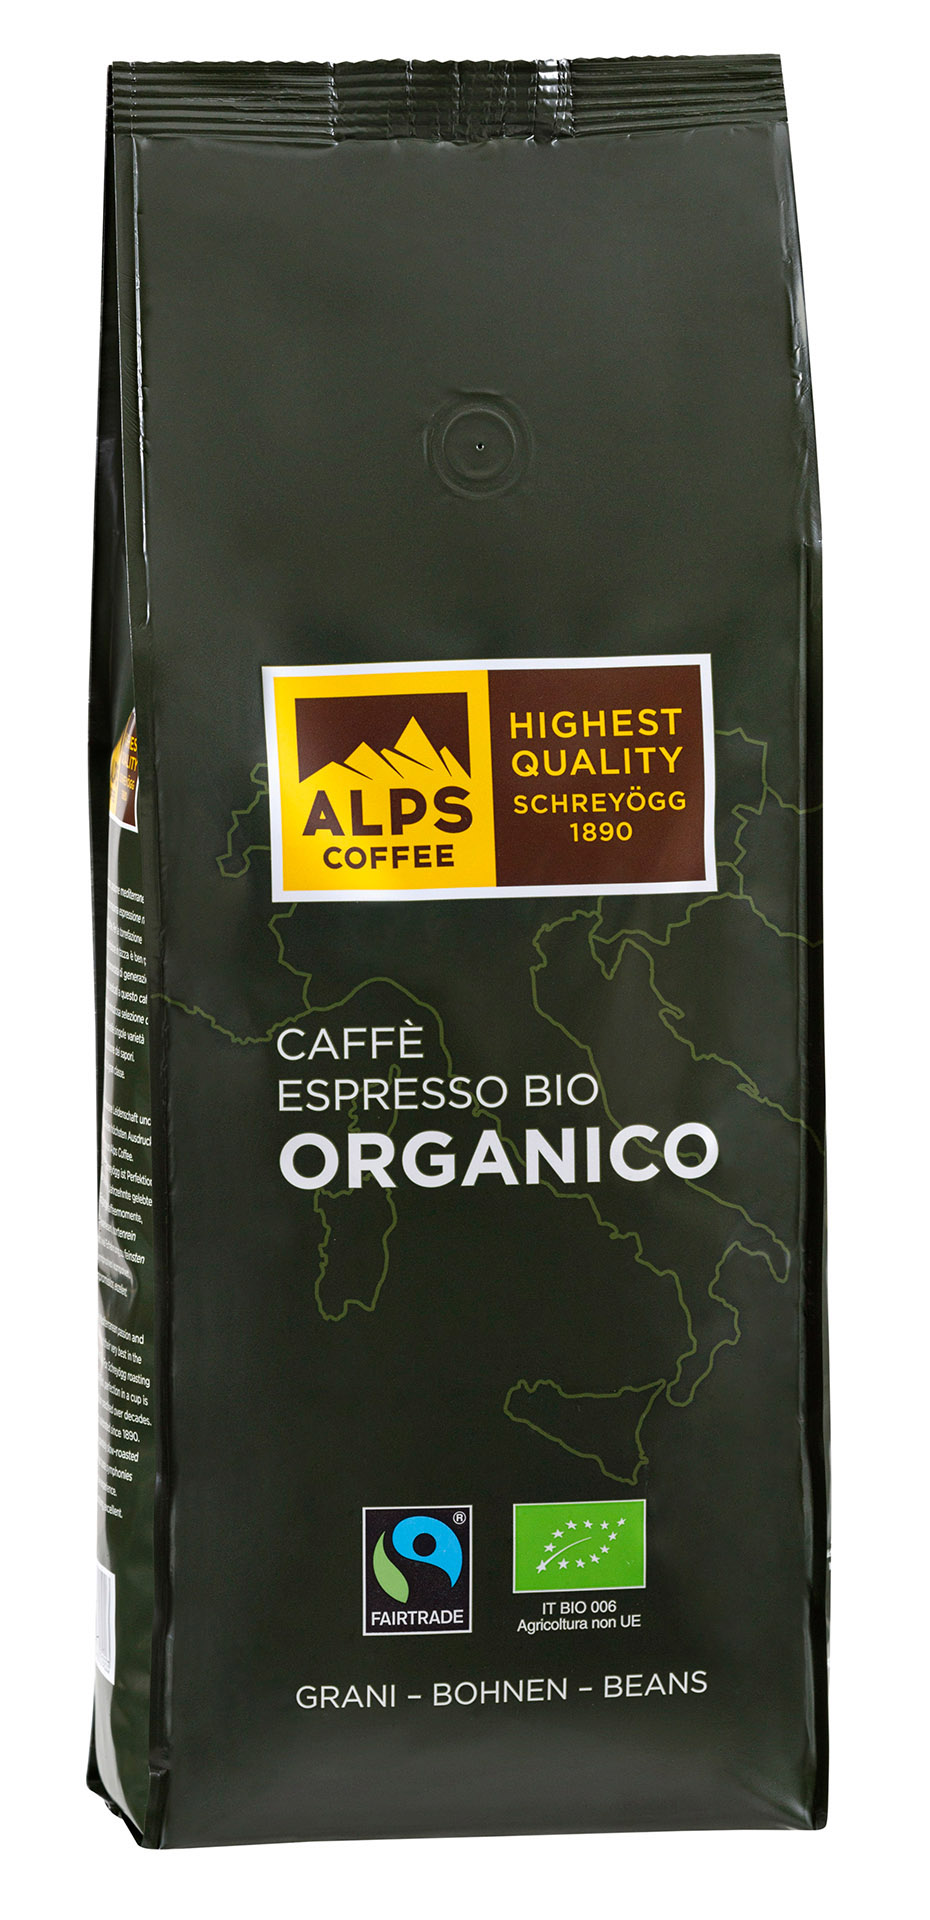 Caffè Espresso Organico Bio (Flo) 1000g